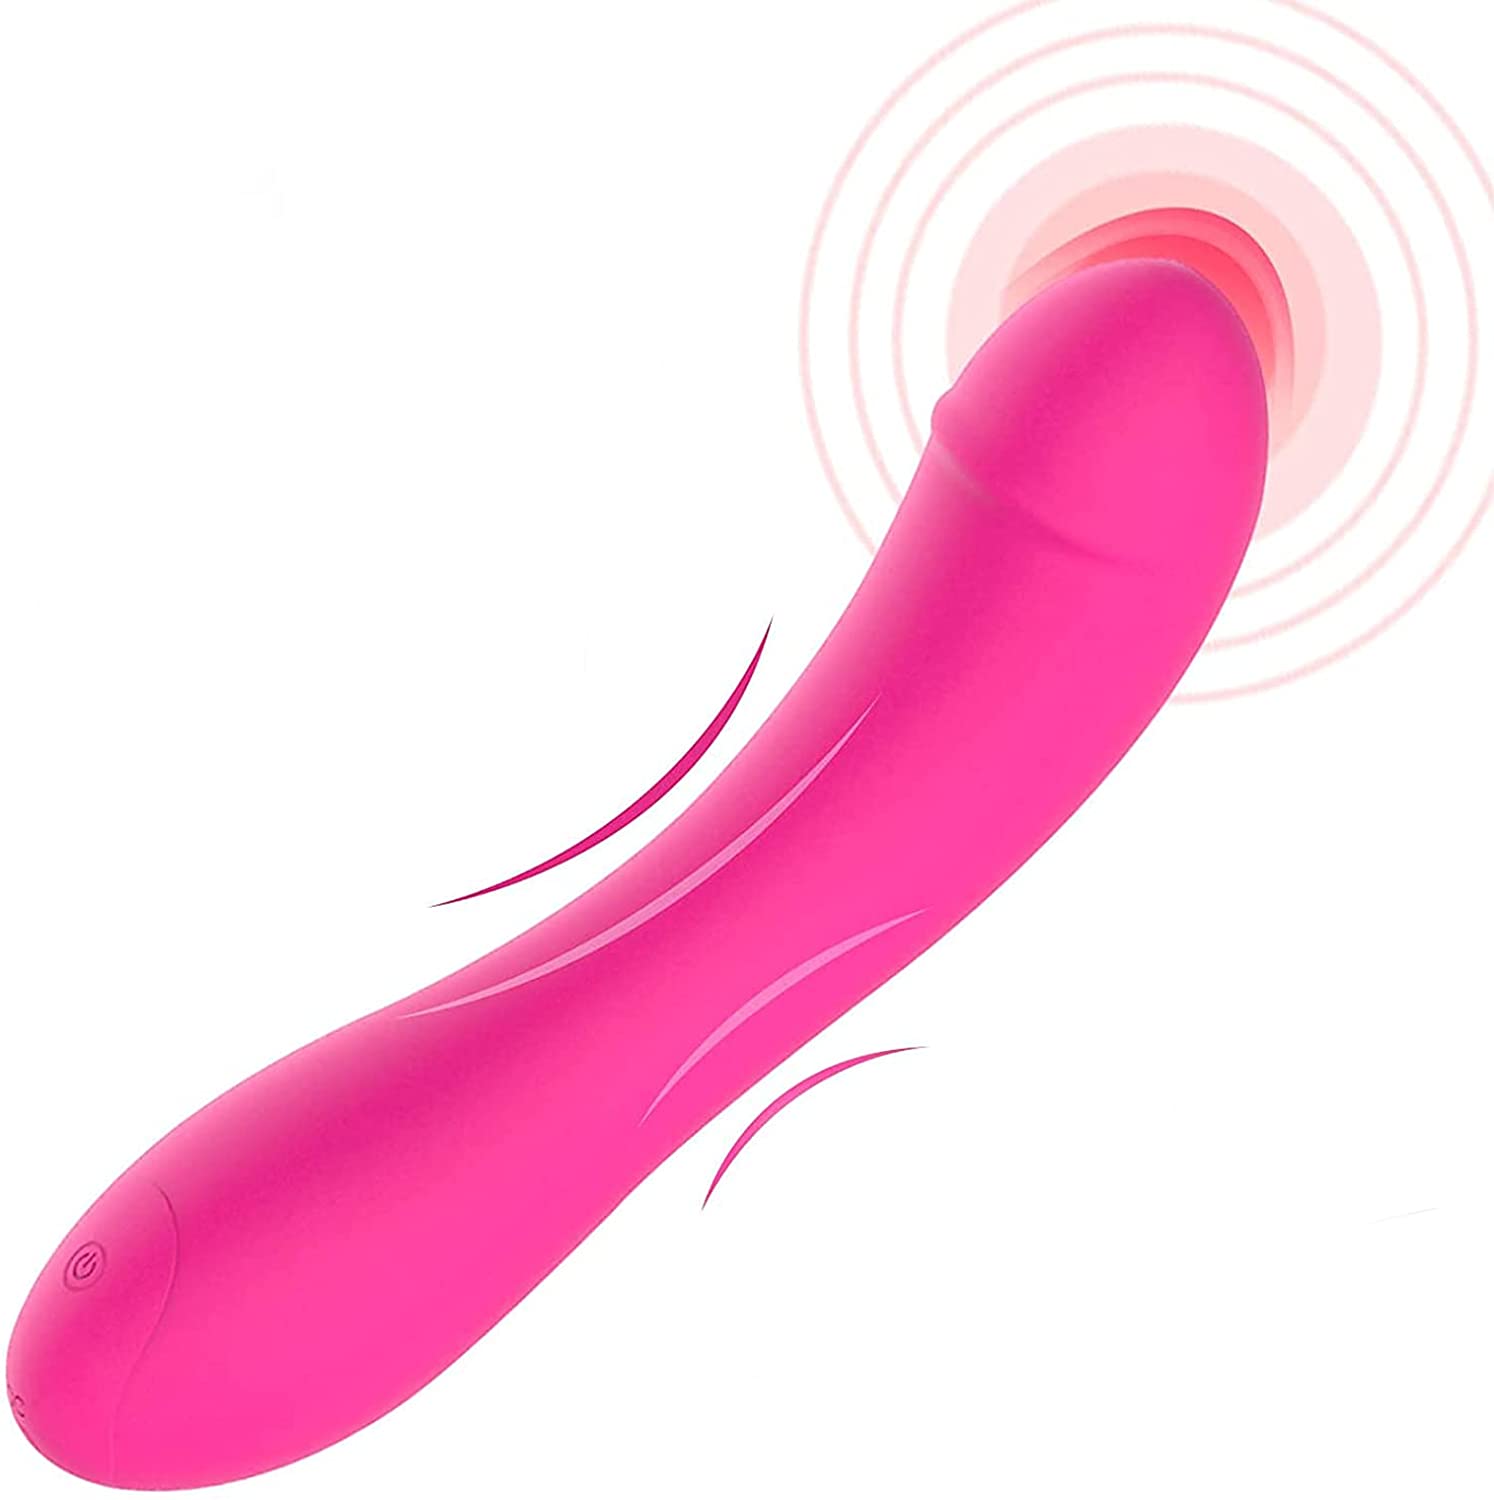 Laphwing Pink Chili G Spot Dildo Vibrator